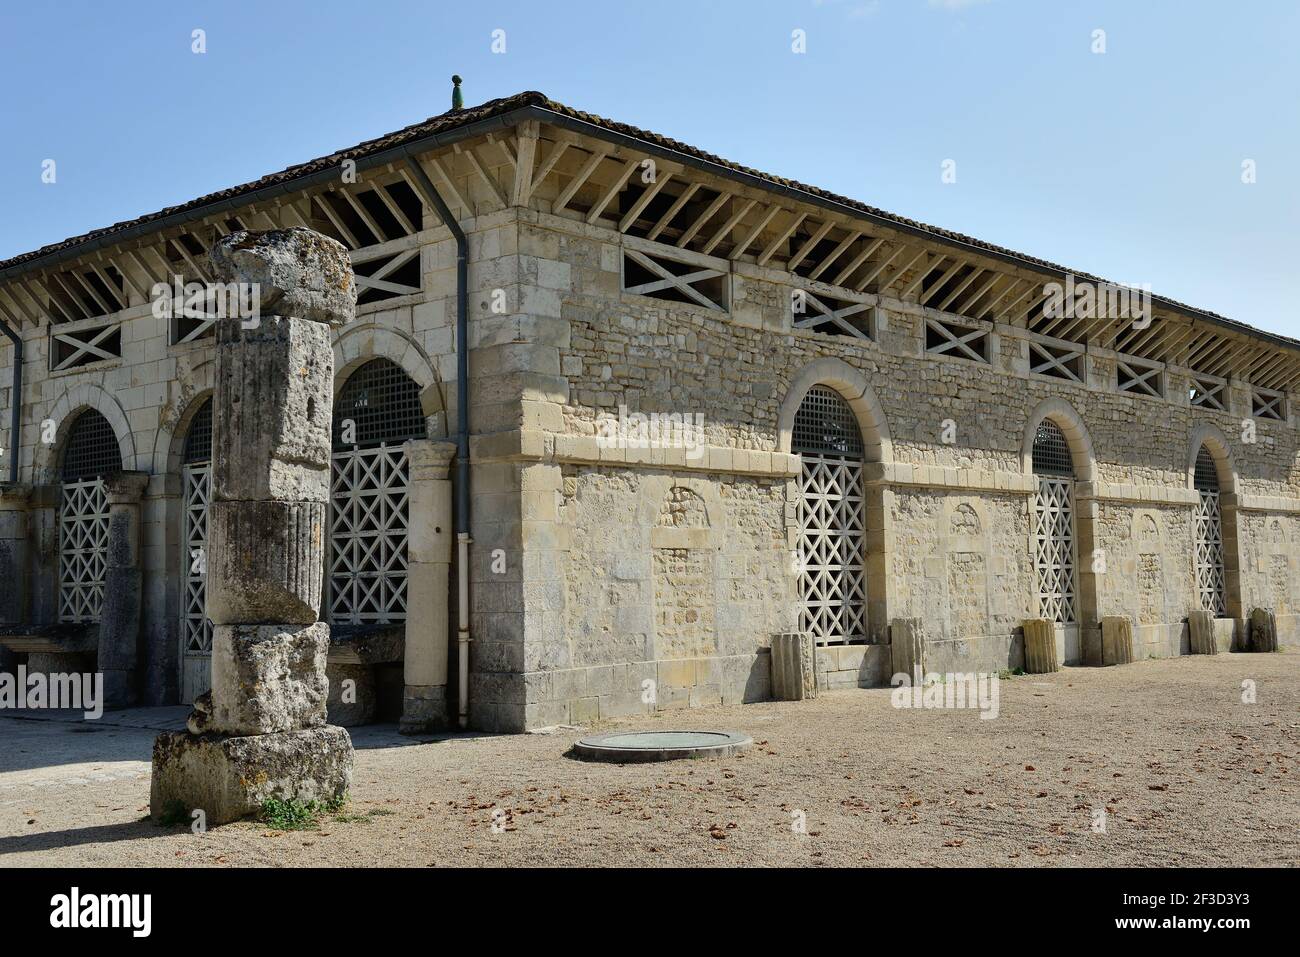 Saintes (Francia centro-occidentale): Edificio romano del vicino all'Arco di Germanico, vestigia dell'antichità romana, in piazza "Esplanade Andre Malraux". Foto Stock